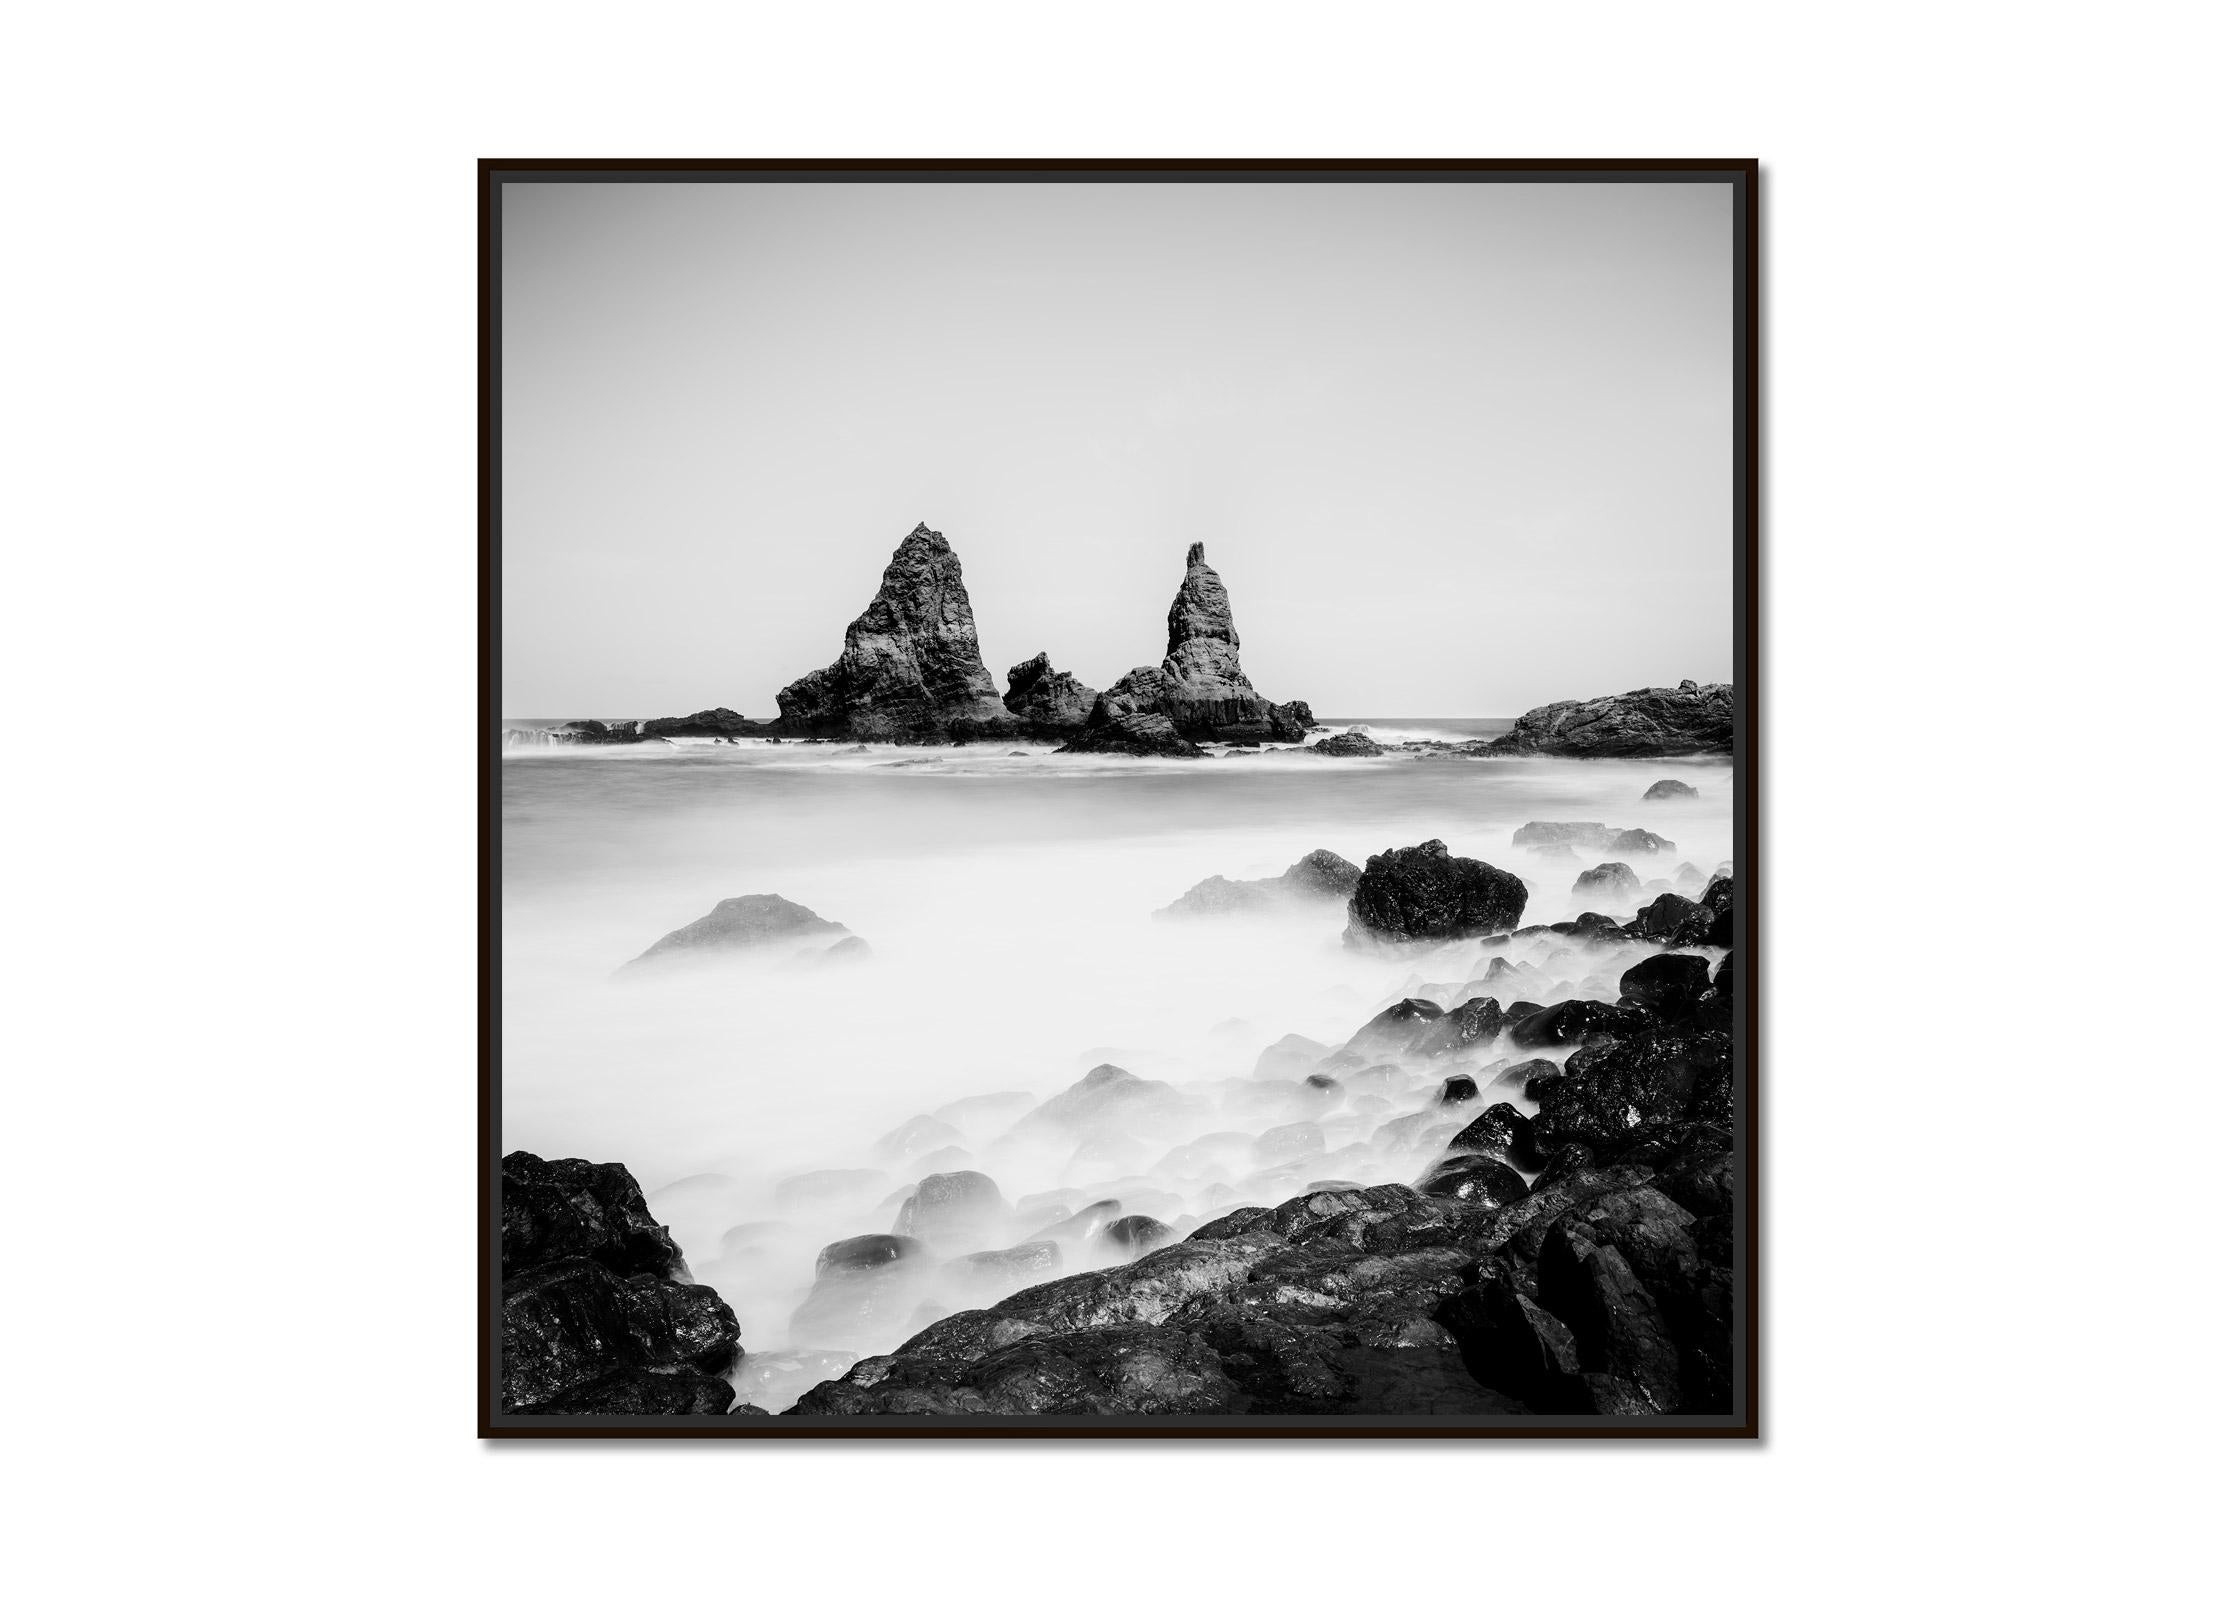 Roques de Arguamul Rocks, Spain, black and white, long exposure landscape photo - Photograph by Gerald Berghammer